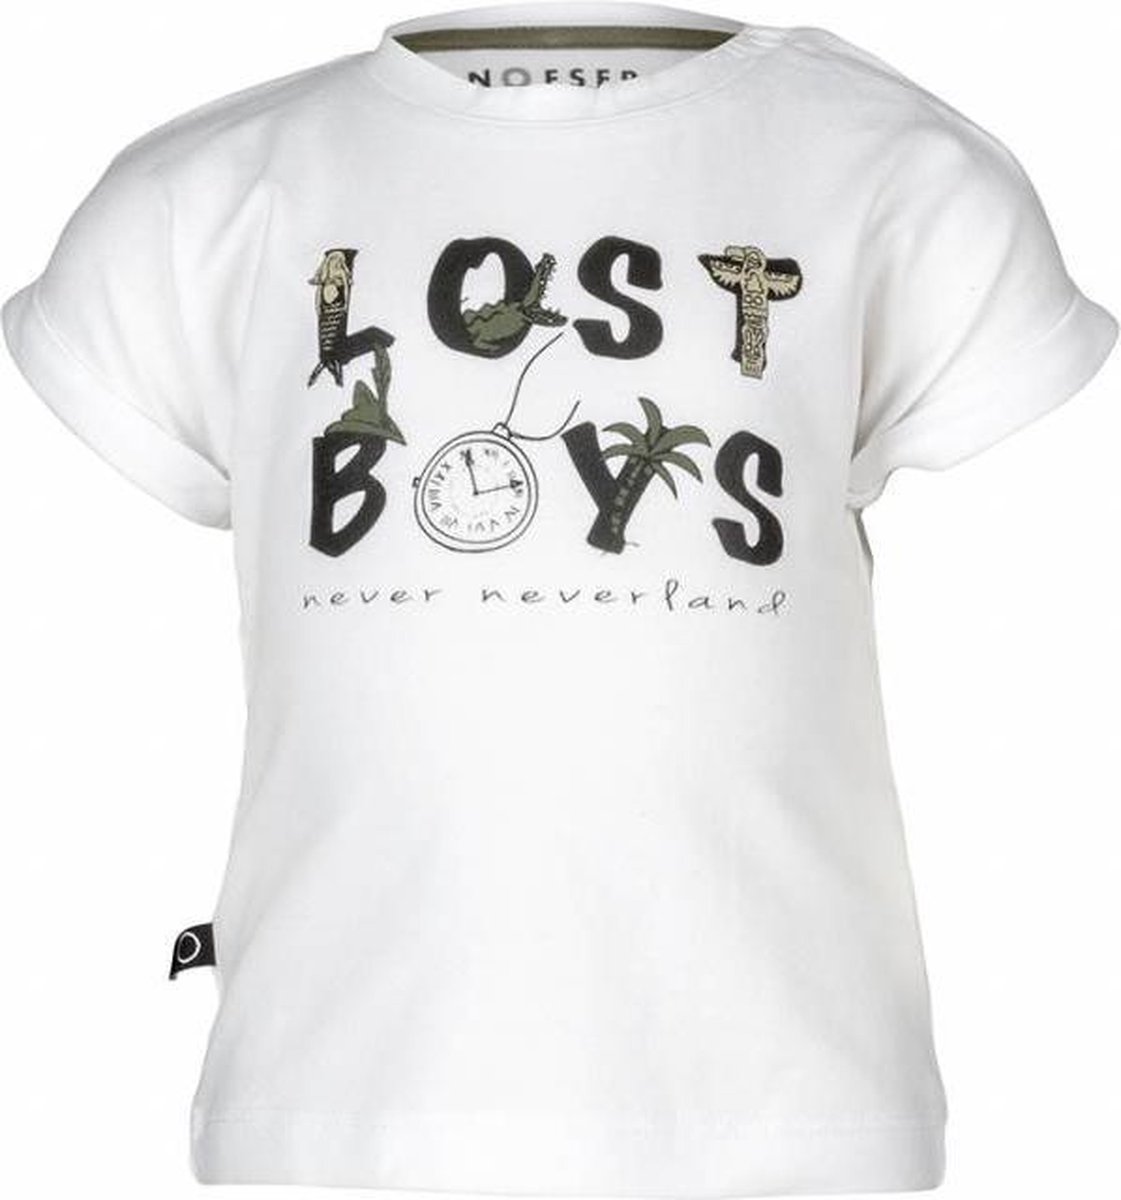 nOeser T-shirt Tom lost boys club